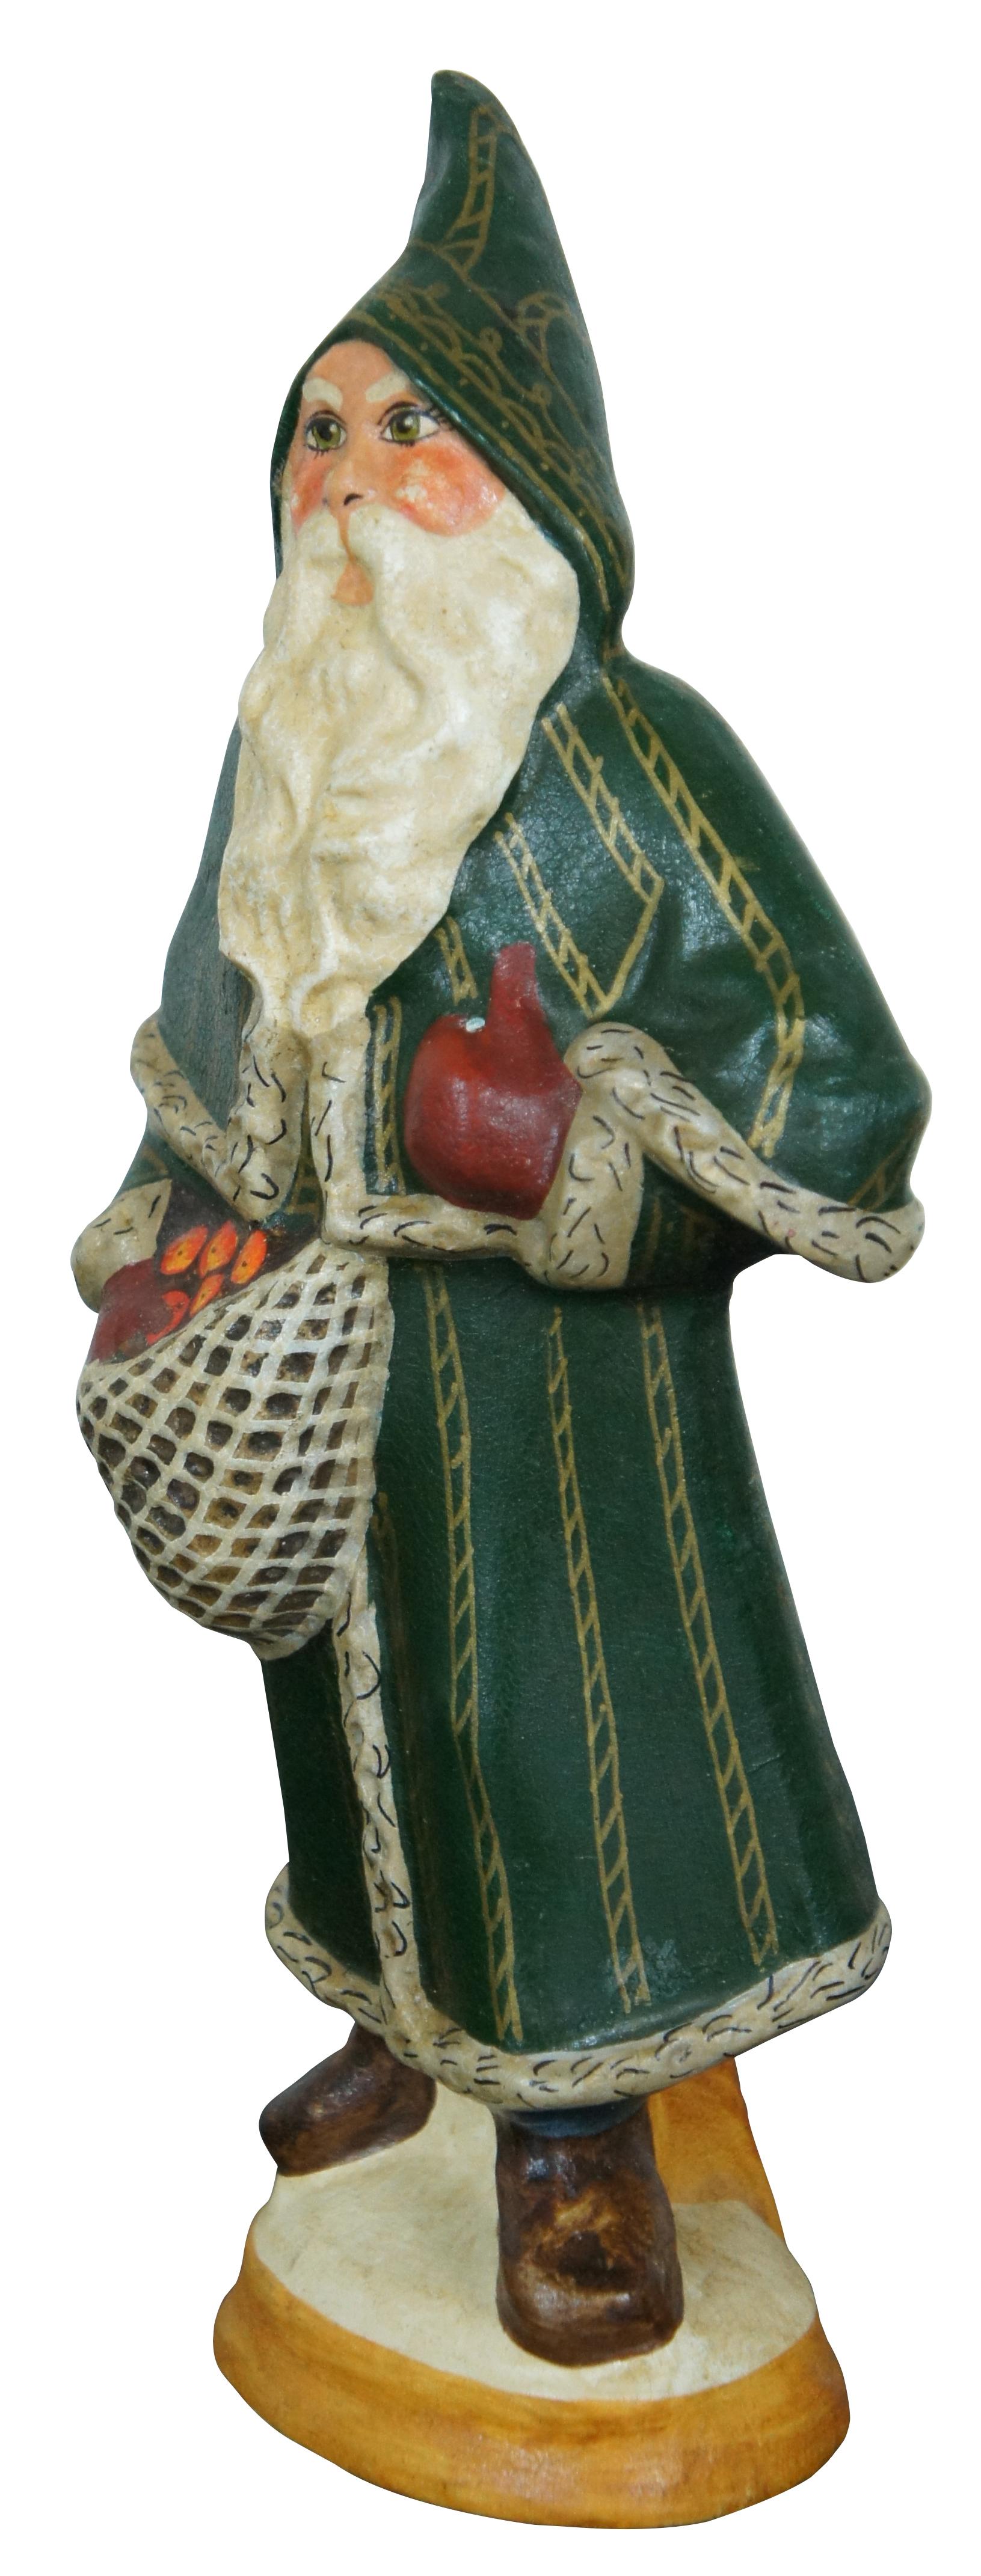 Vintage 1992 Vaillancourt Folk Art Kreidegeschirr Figur #1219 des Weihnachtsmannes oder Santa Claus in grün und gold gekleidet mit einer Schirmmütze und roten Handschuhen, trägt einen gewebten Sack mit Obst, wahrscheinlich Äpfel.
 